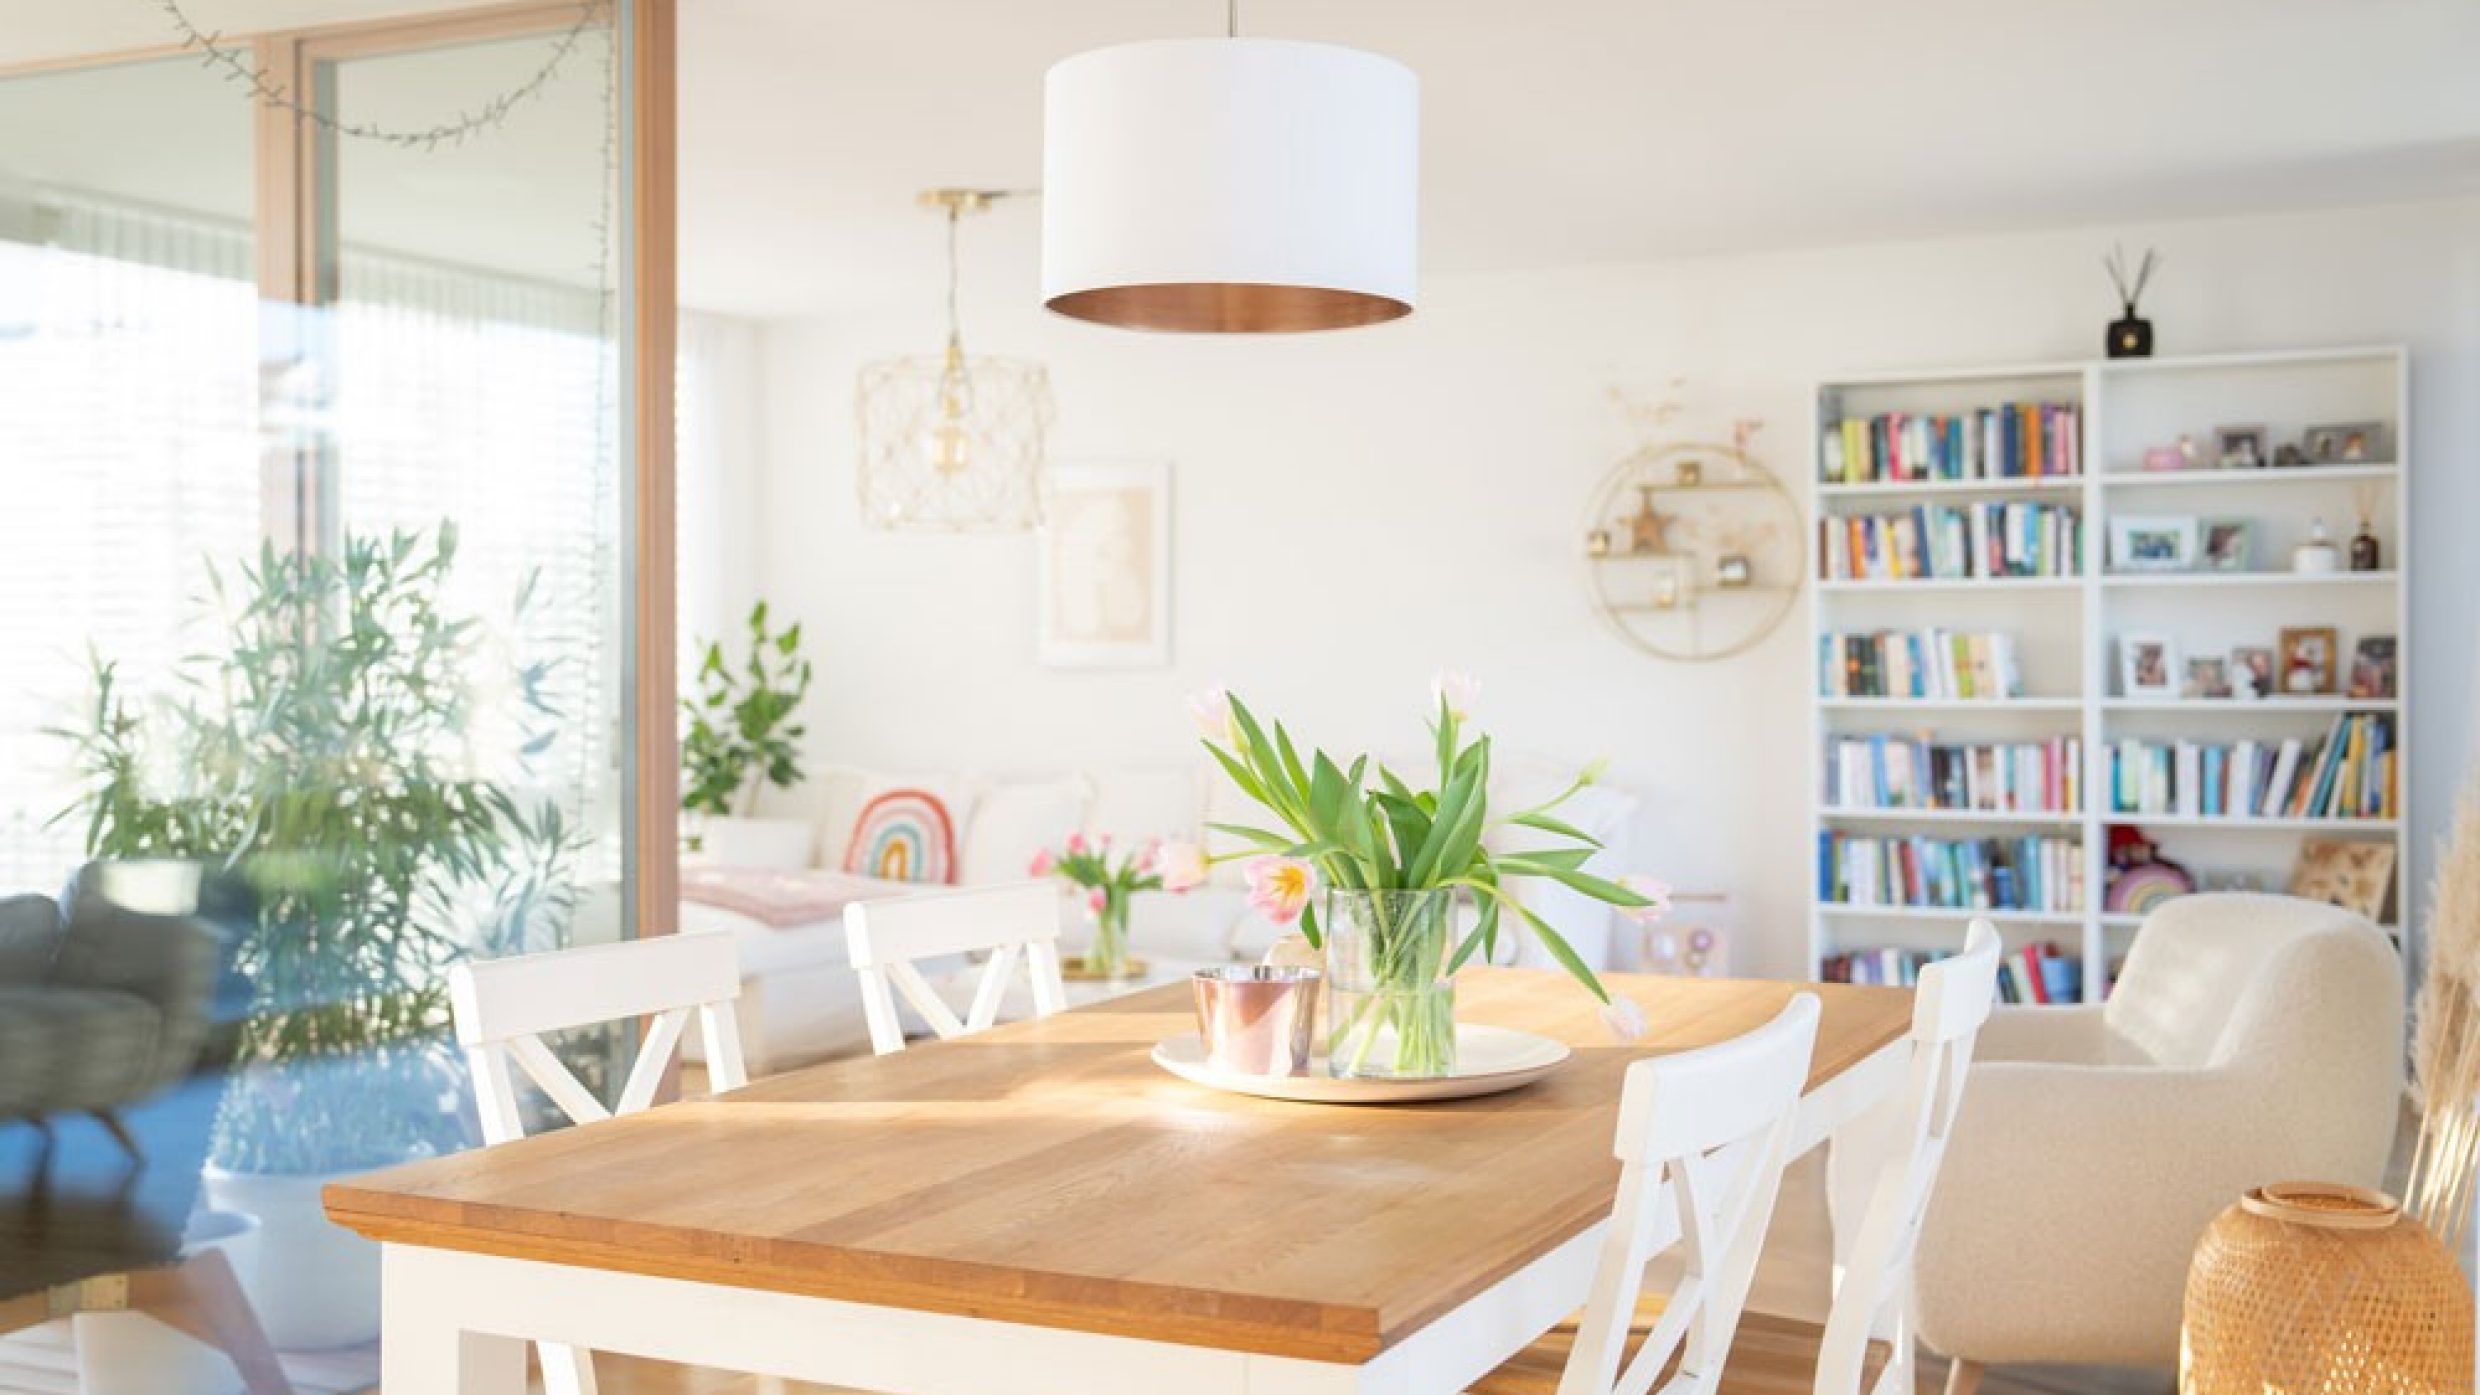 Un tavolo da pranzo con bellissimi tulipani, dietro il quale si scorgono una loggia e il soggiorno con una libreria.